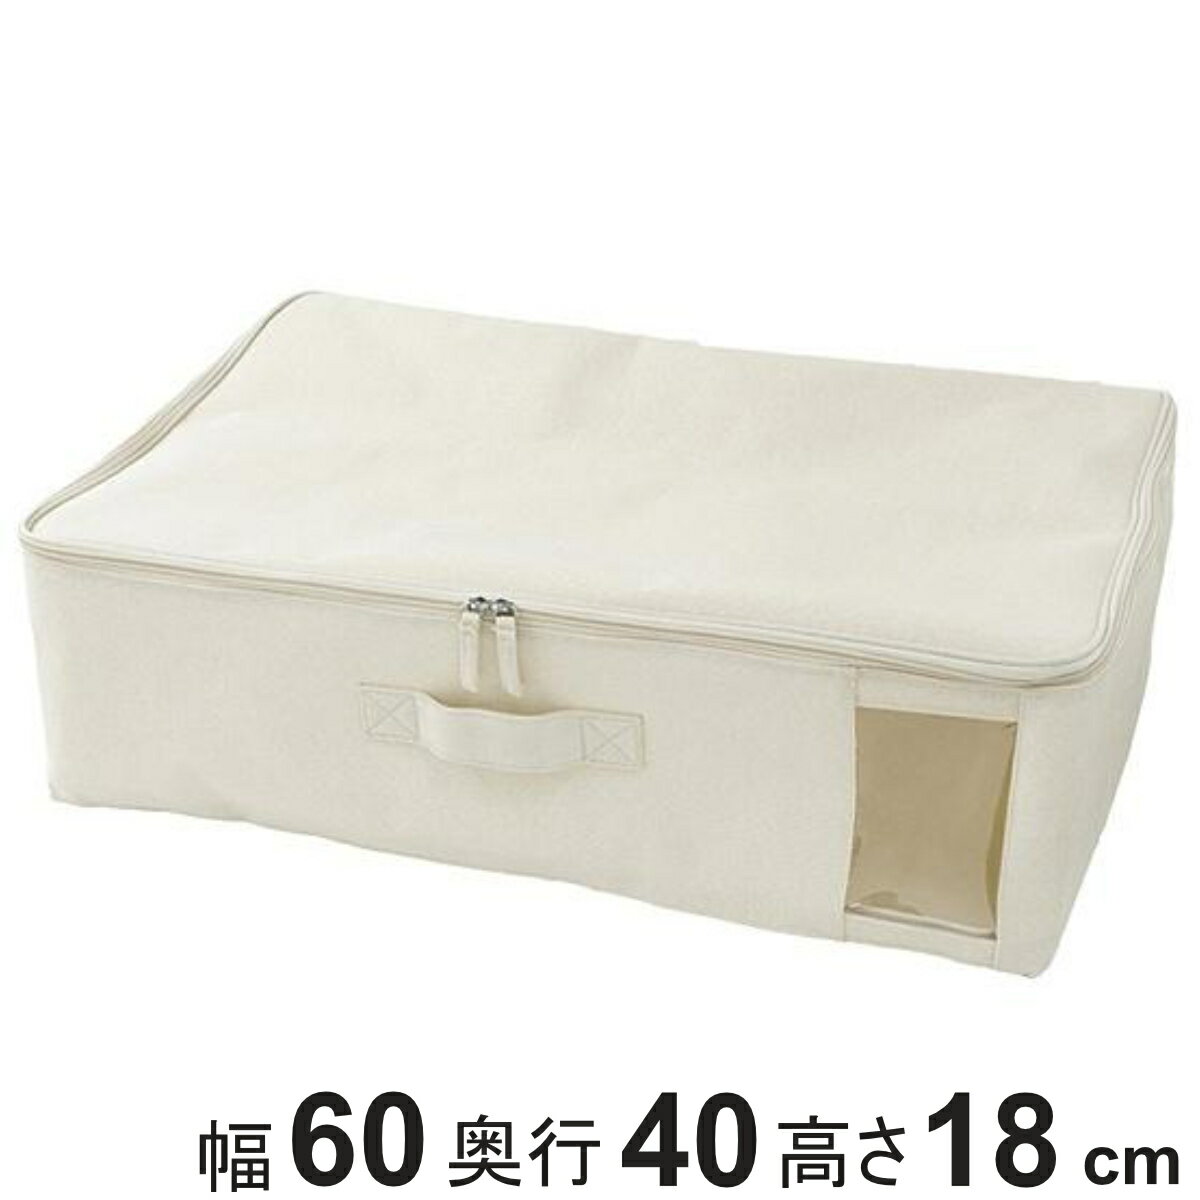 ファブリック収納ボックス 衣類収納ケース フタ付きファブリックボックス 幅60×